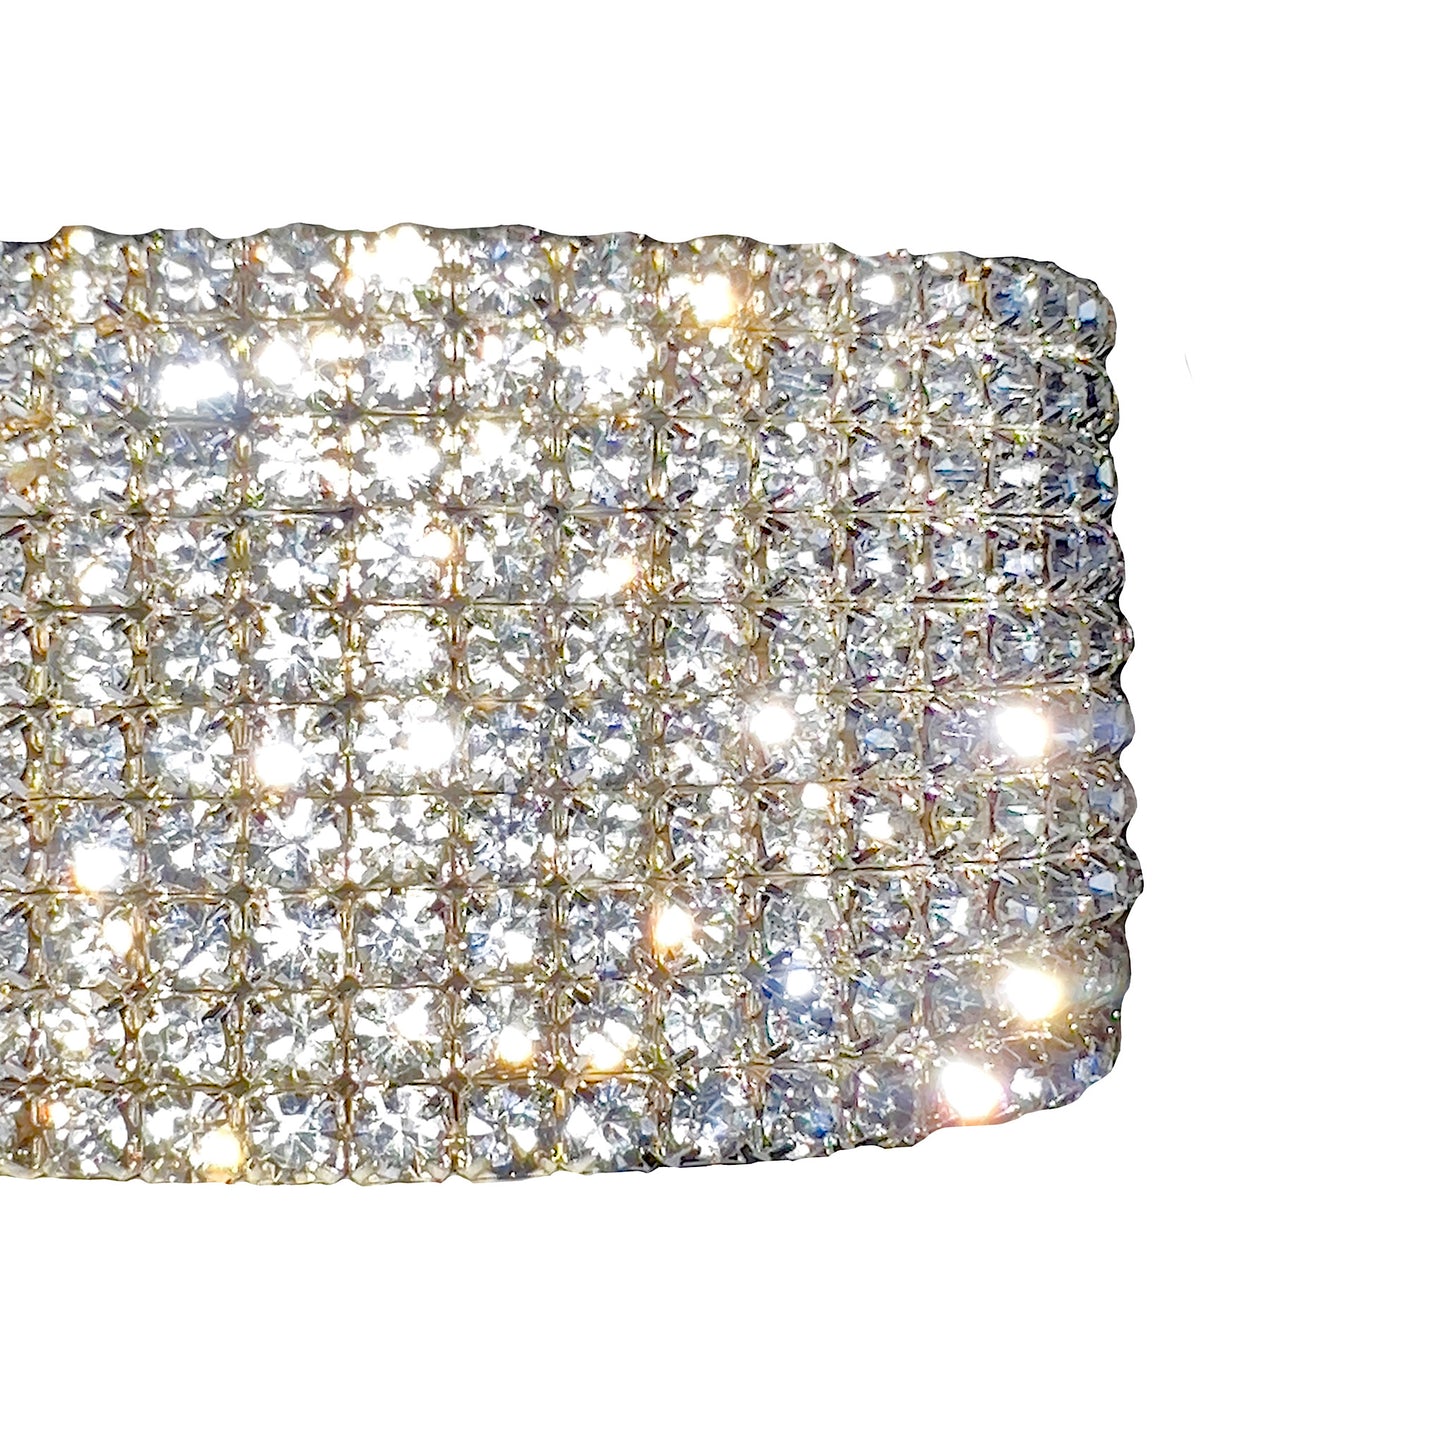 ICY Bracelet: Clear Diamonds 10 Row